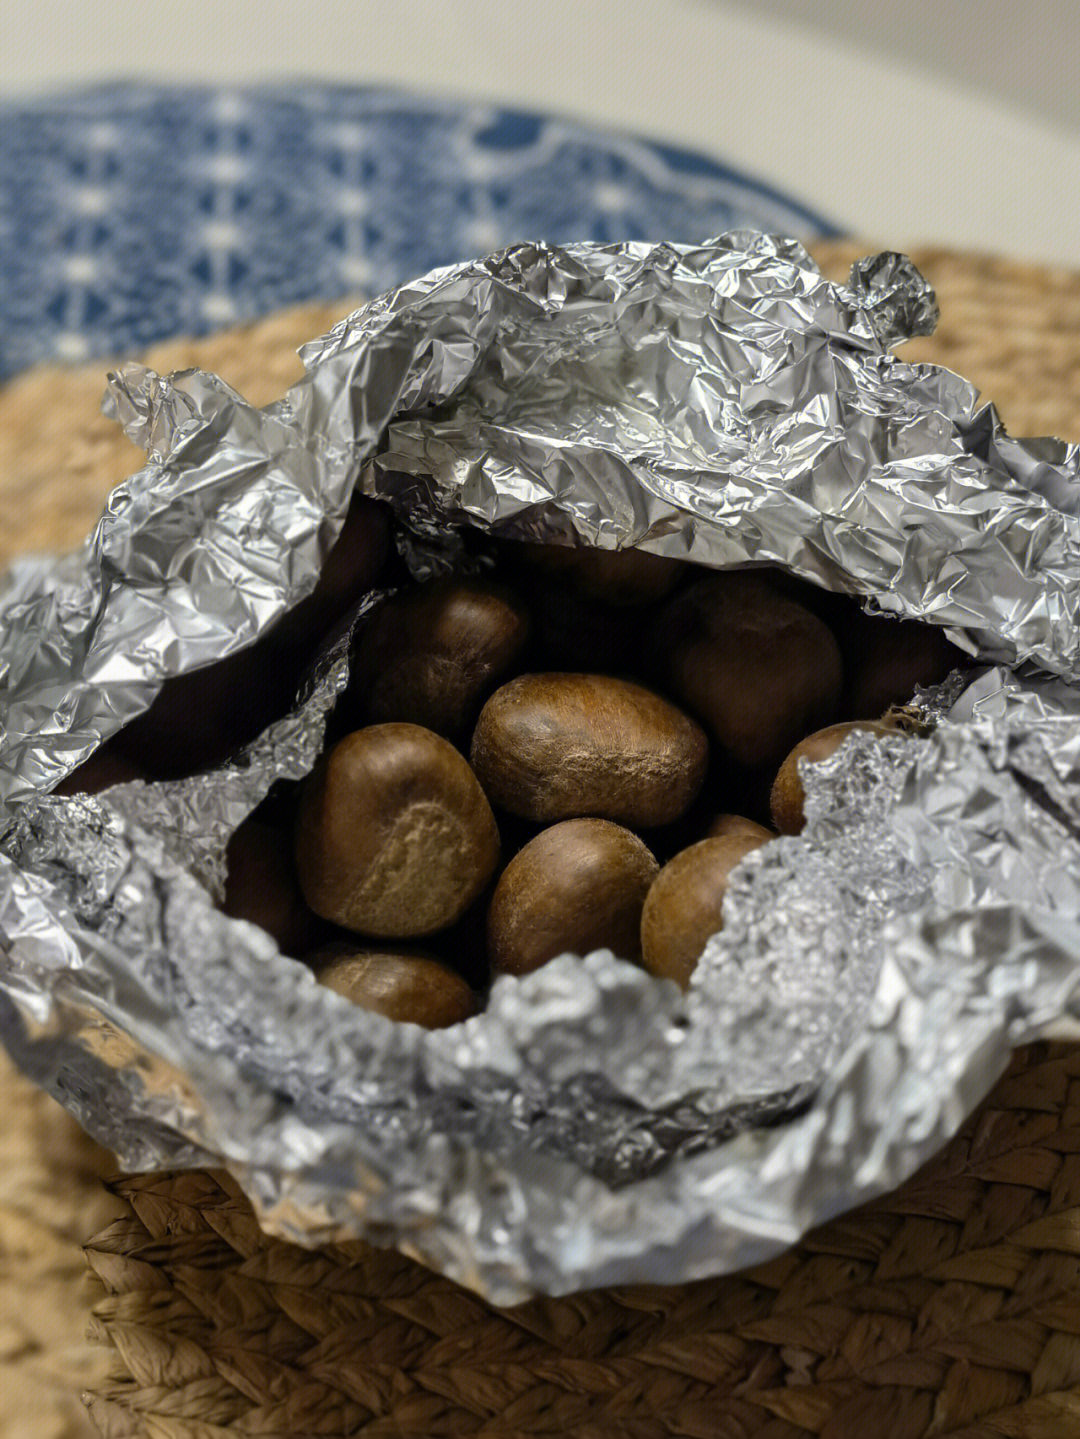 毛栗子用锡纸包住烤箱200℃,15分钟不用煮,不用切口跟外面的糖炒栗子